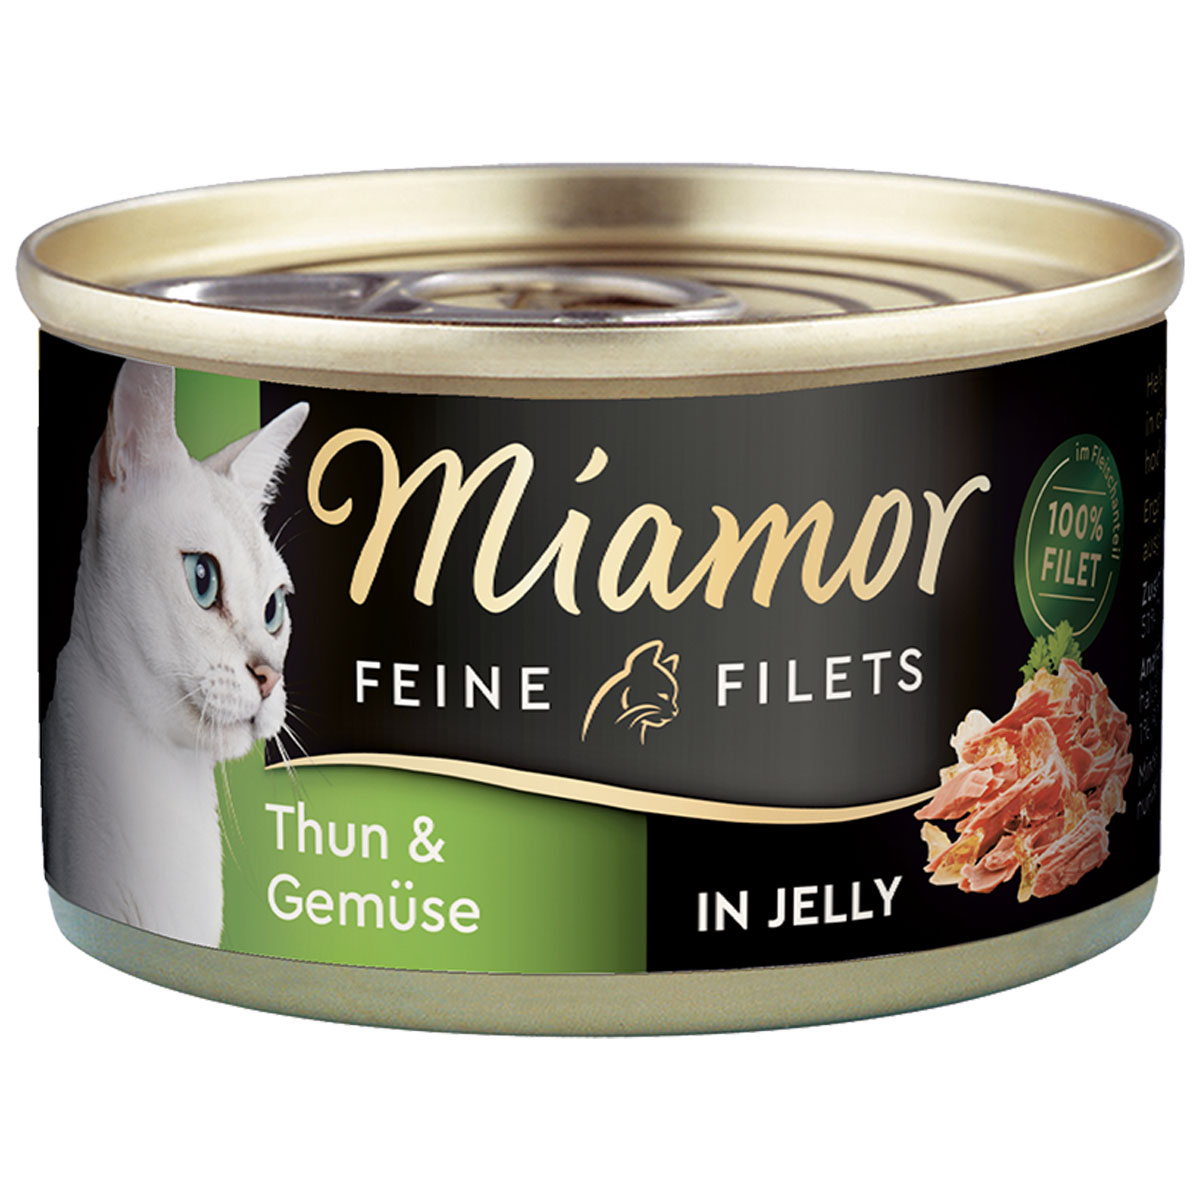 Miamor Katzenfutter Feine Filets in Jelly Thunfisch und Gemüse 24x100g